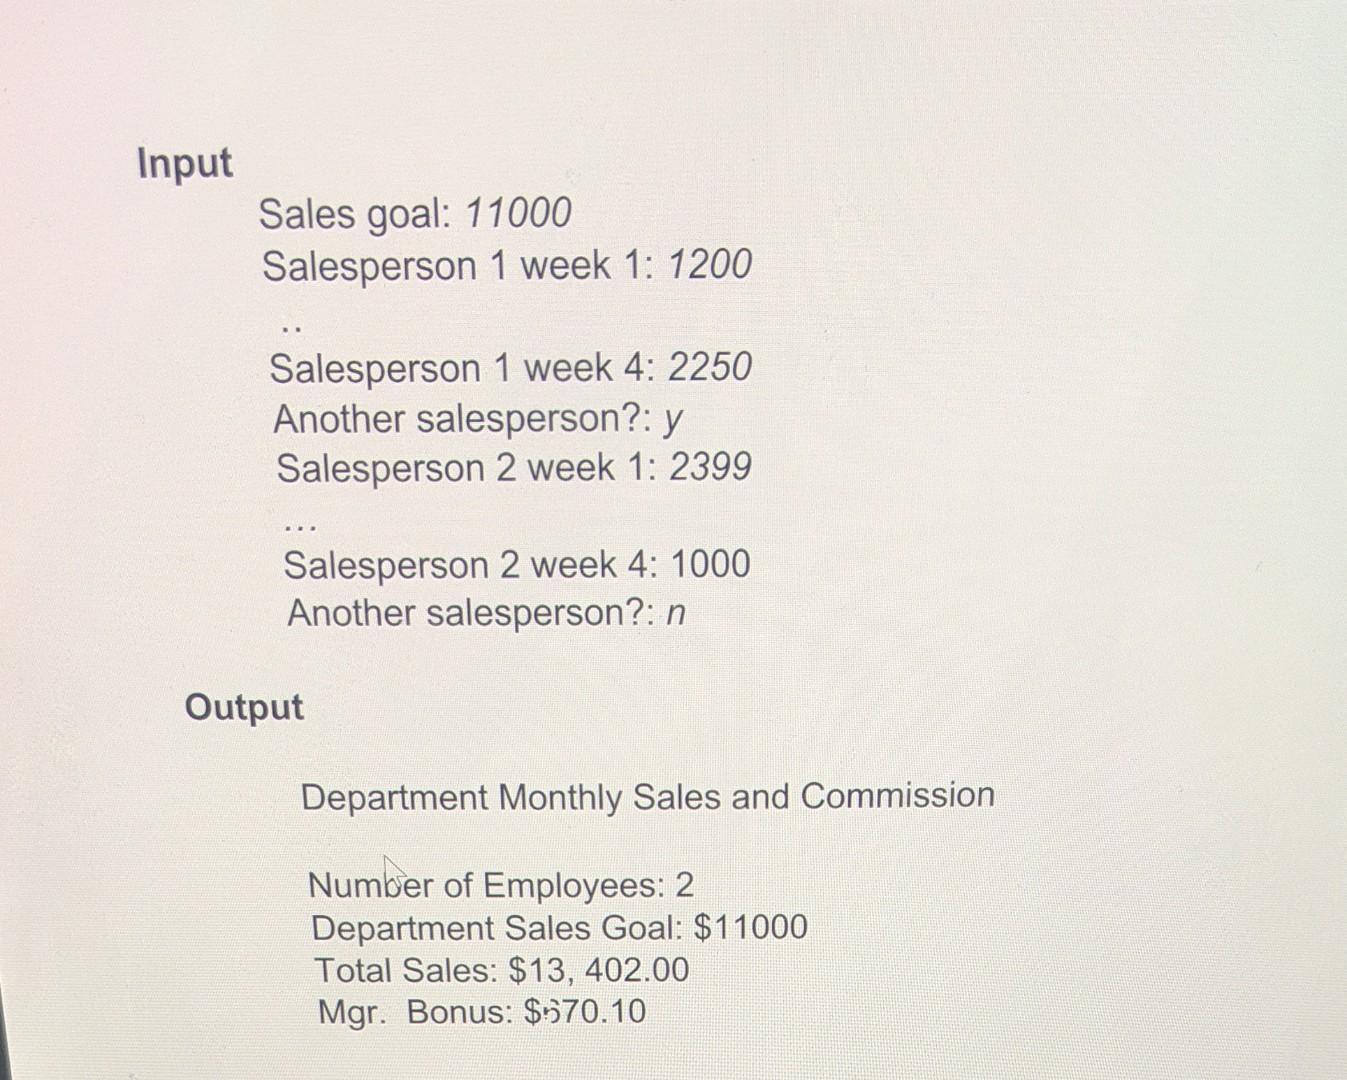 Input Sales goal: 11000 Salesperson 1 week 1: 1200 Salesperson 1 week 4: 2250 Another salesperson?: y